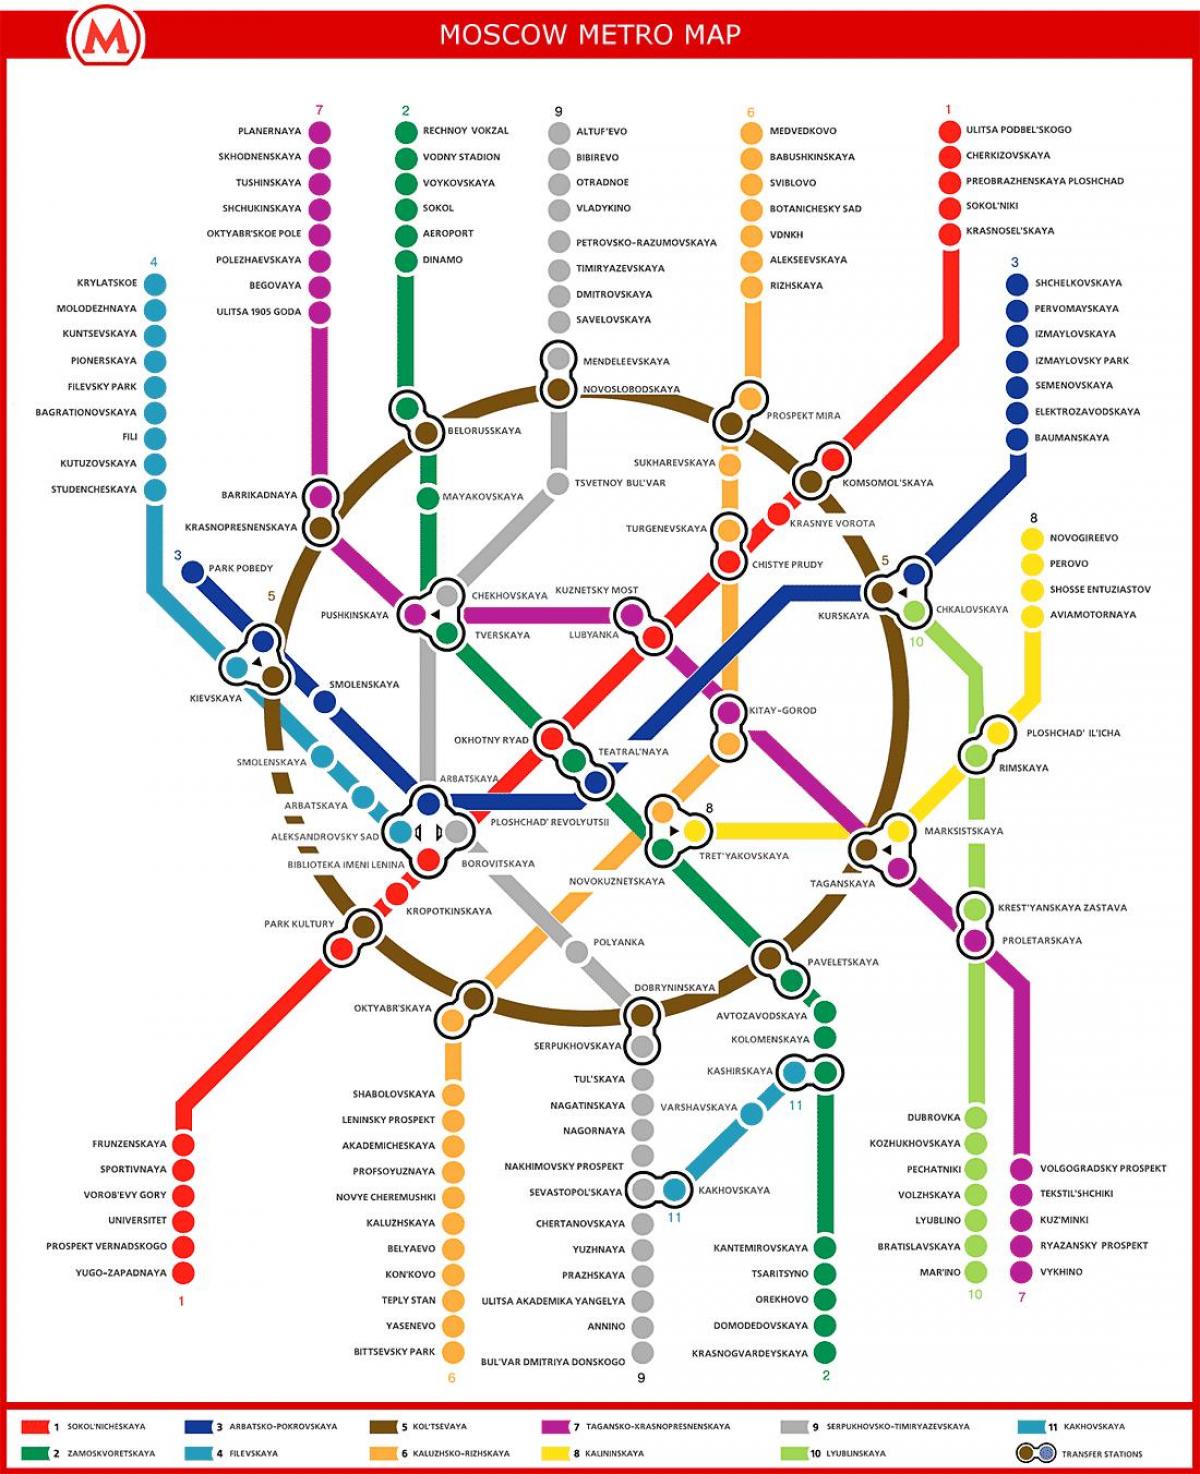 Moskvas metro kort i russisk